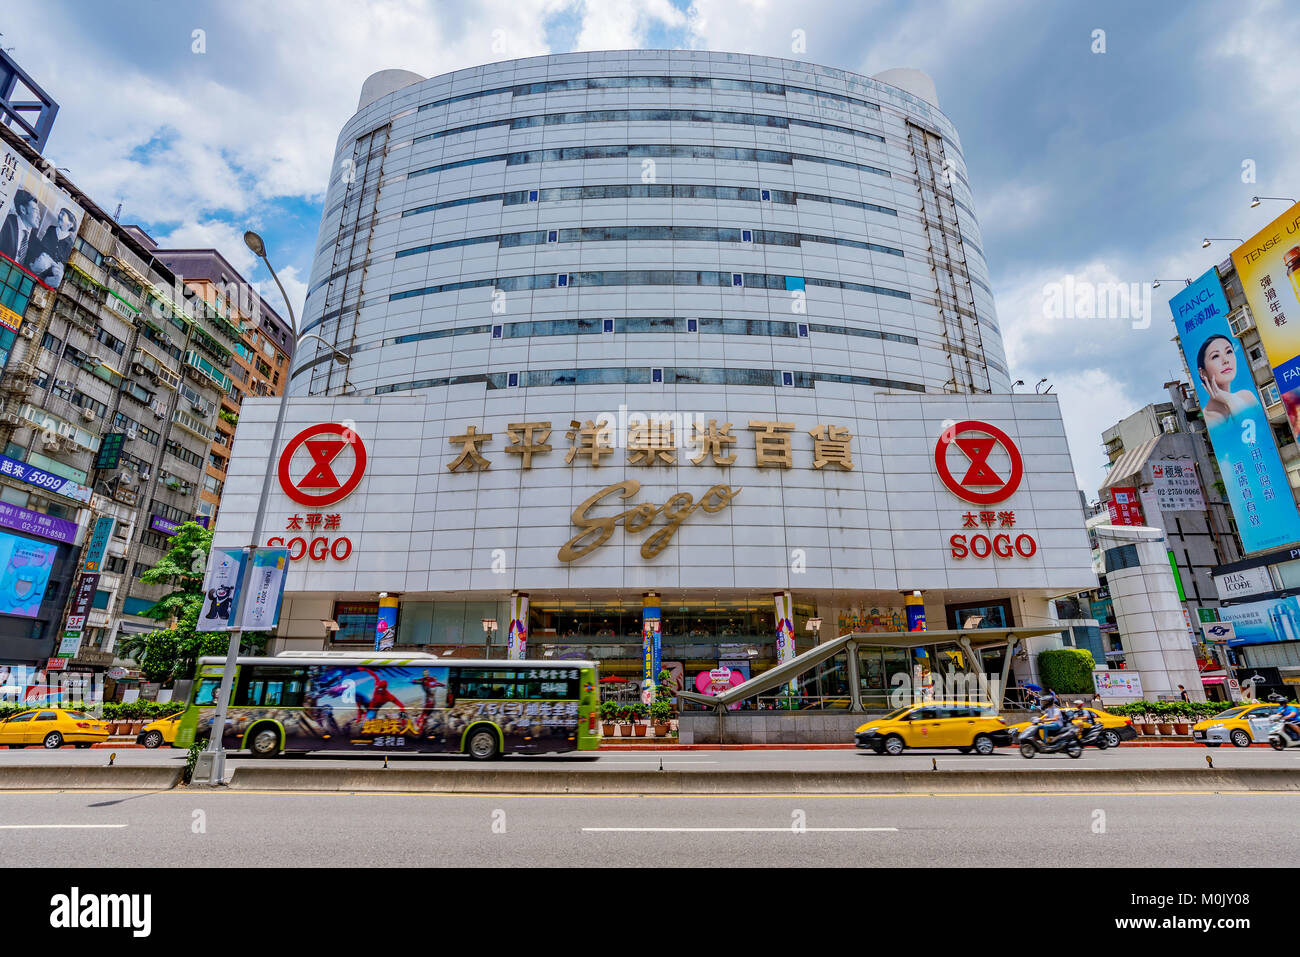 TAIPEI, TAIWAN - Le 27 juin : c'est l'ancien grand magasin Sogo qui est un endroit populaire pour acheter des articles de luxe dans le centre-ville de Zhongxiao Fuxing sont Banque D'Images